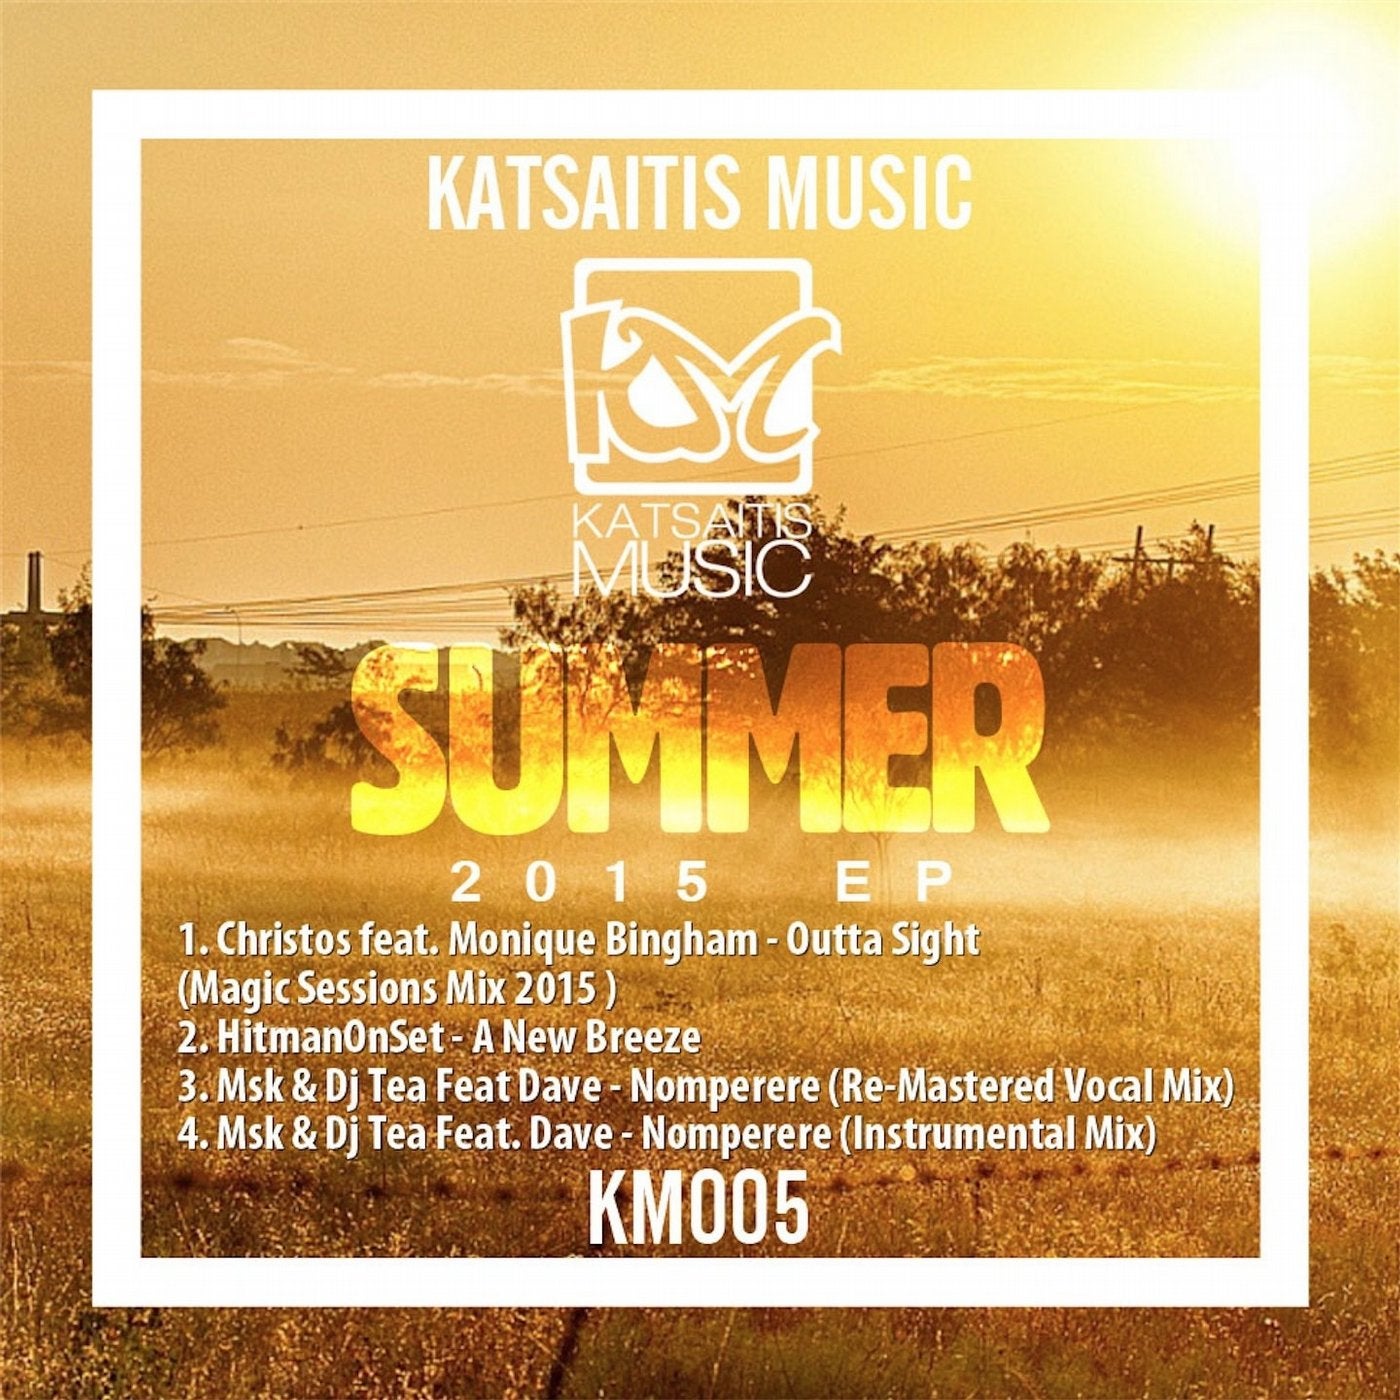 Katsaitis Music Summer EP 2015